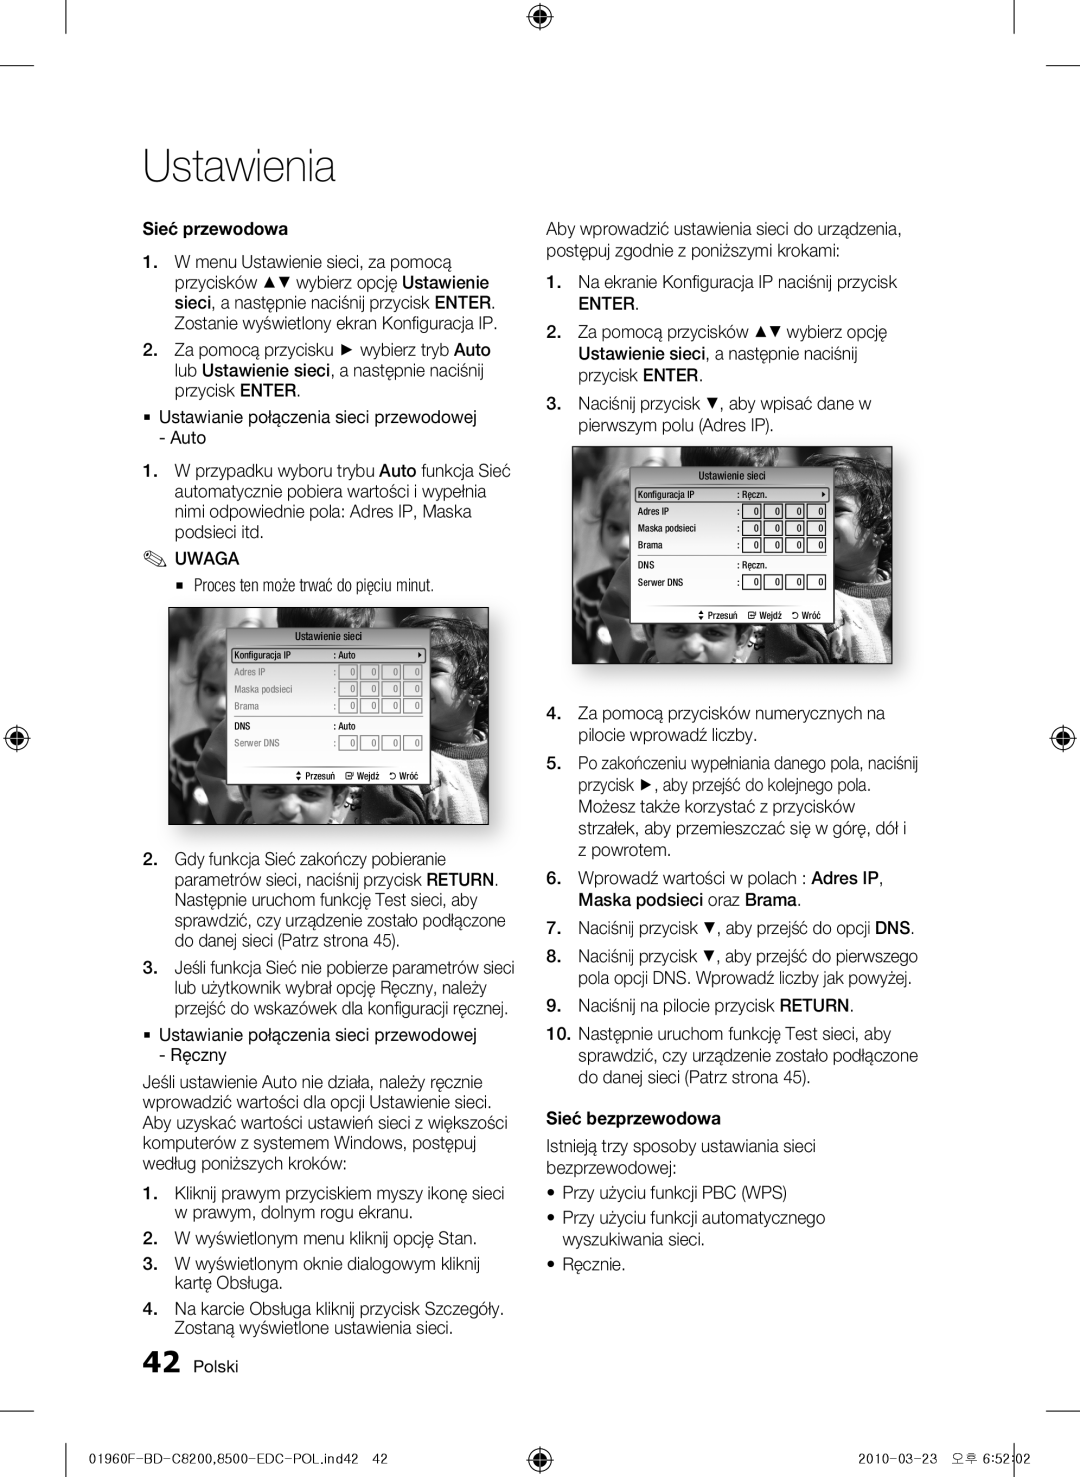 Samsung BD-C8500/XEF manual Ustawienia, Sieć przewodowa, Sieć bezprzewodowa, Proces ten może trwać do pięciu minut, Polski 